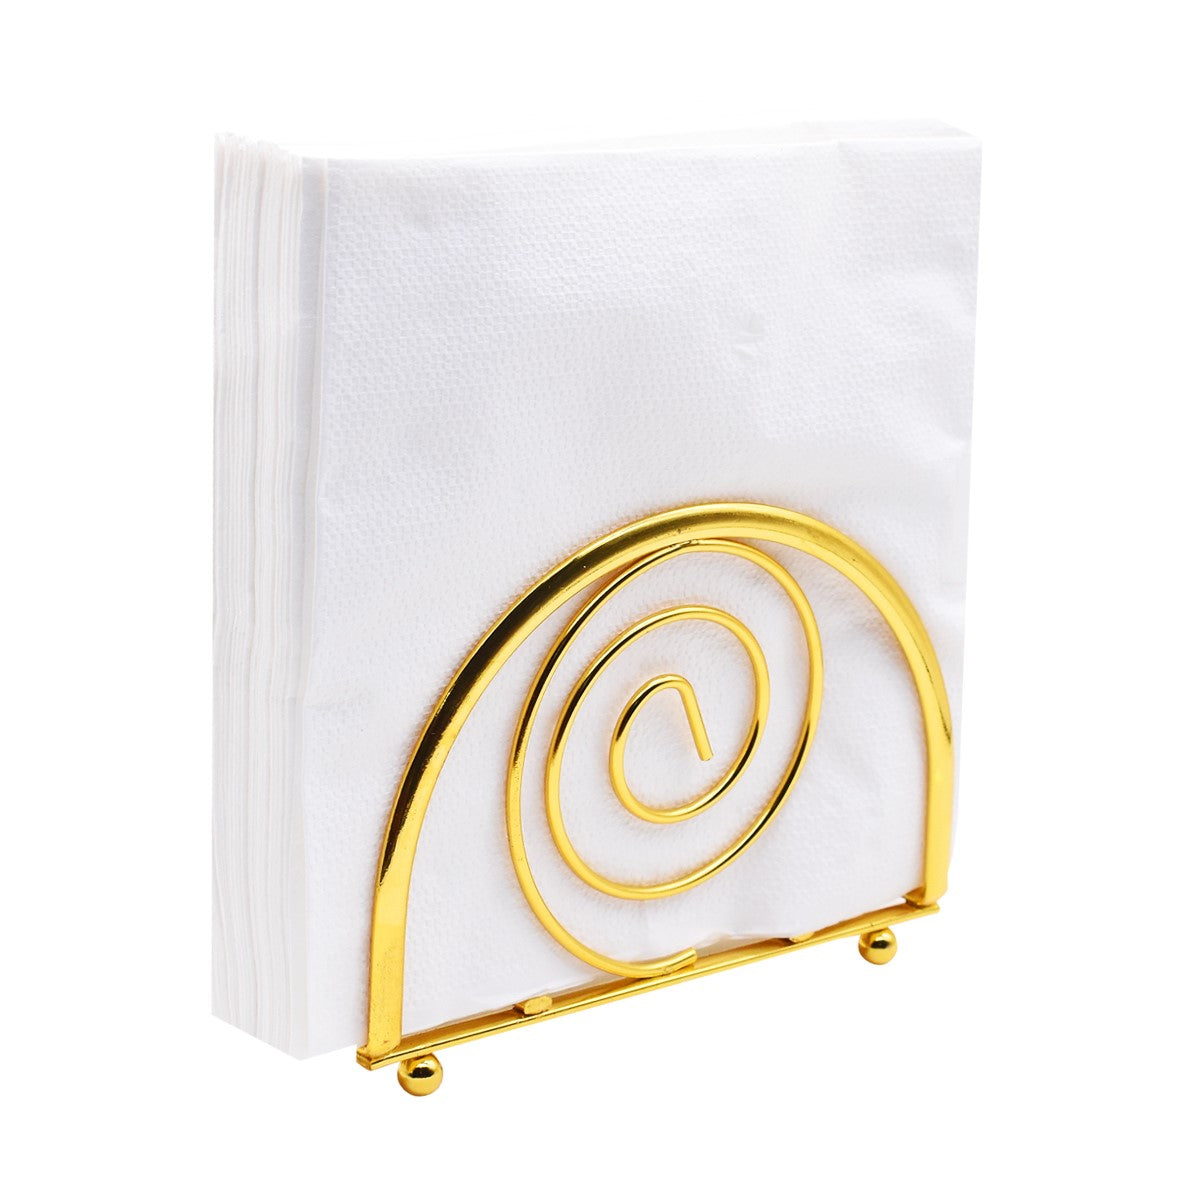 Metal Freestanding Tissue Paper, Napkin Holder for Home & Office, Gold (8762)